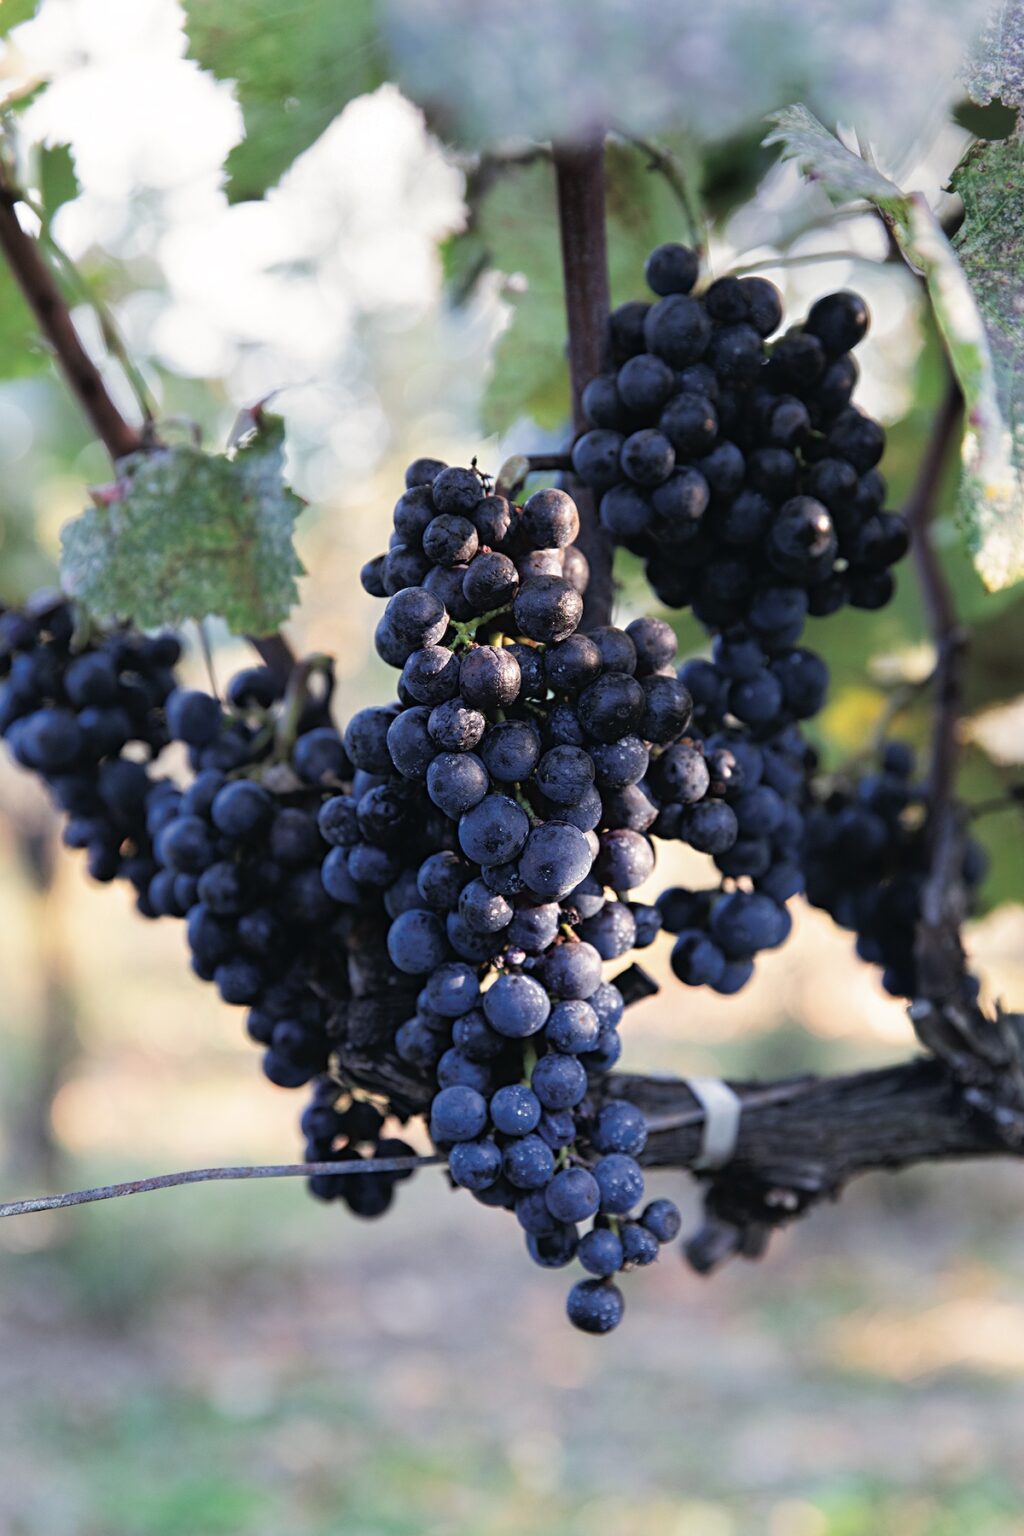 施設内のワインショップ〈八ヶ岳ワインハウス〉では、山梨県と長野県のワイン24種類を、25㎖ 150円からテイスティング可能。女性の造り手で人気の〈ドメーヌ ミエ・イケノ〉も常備。